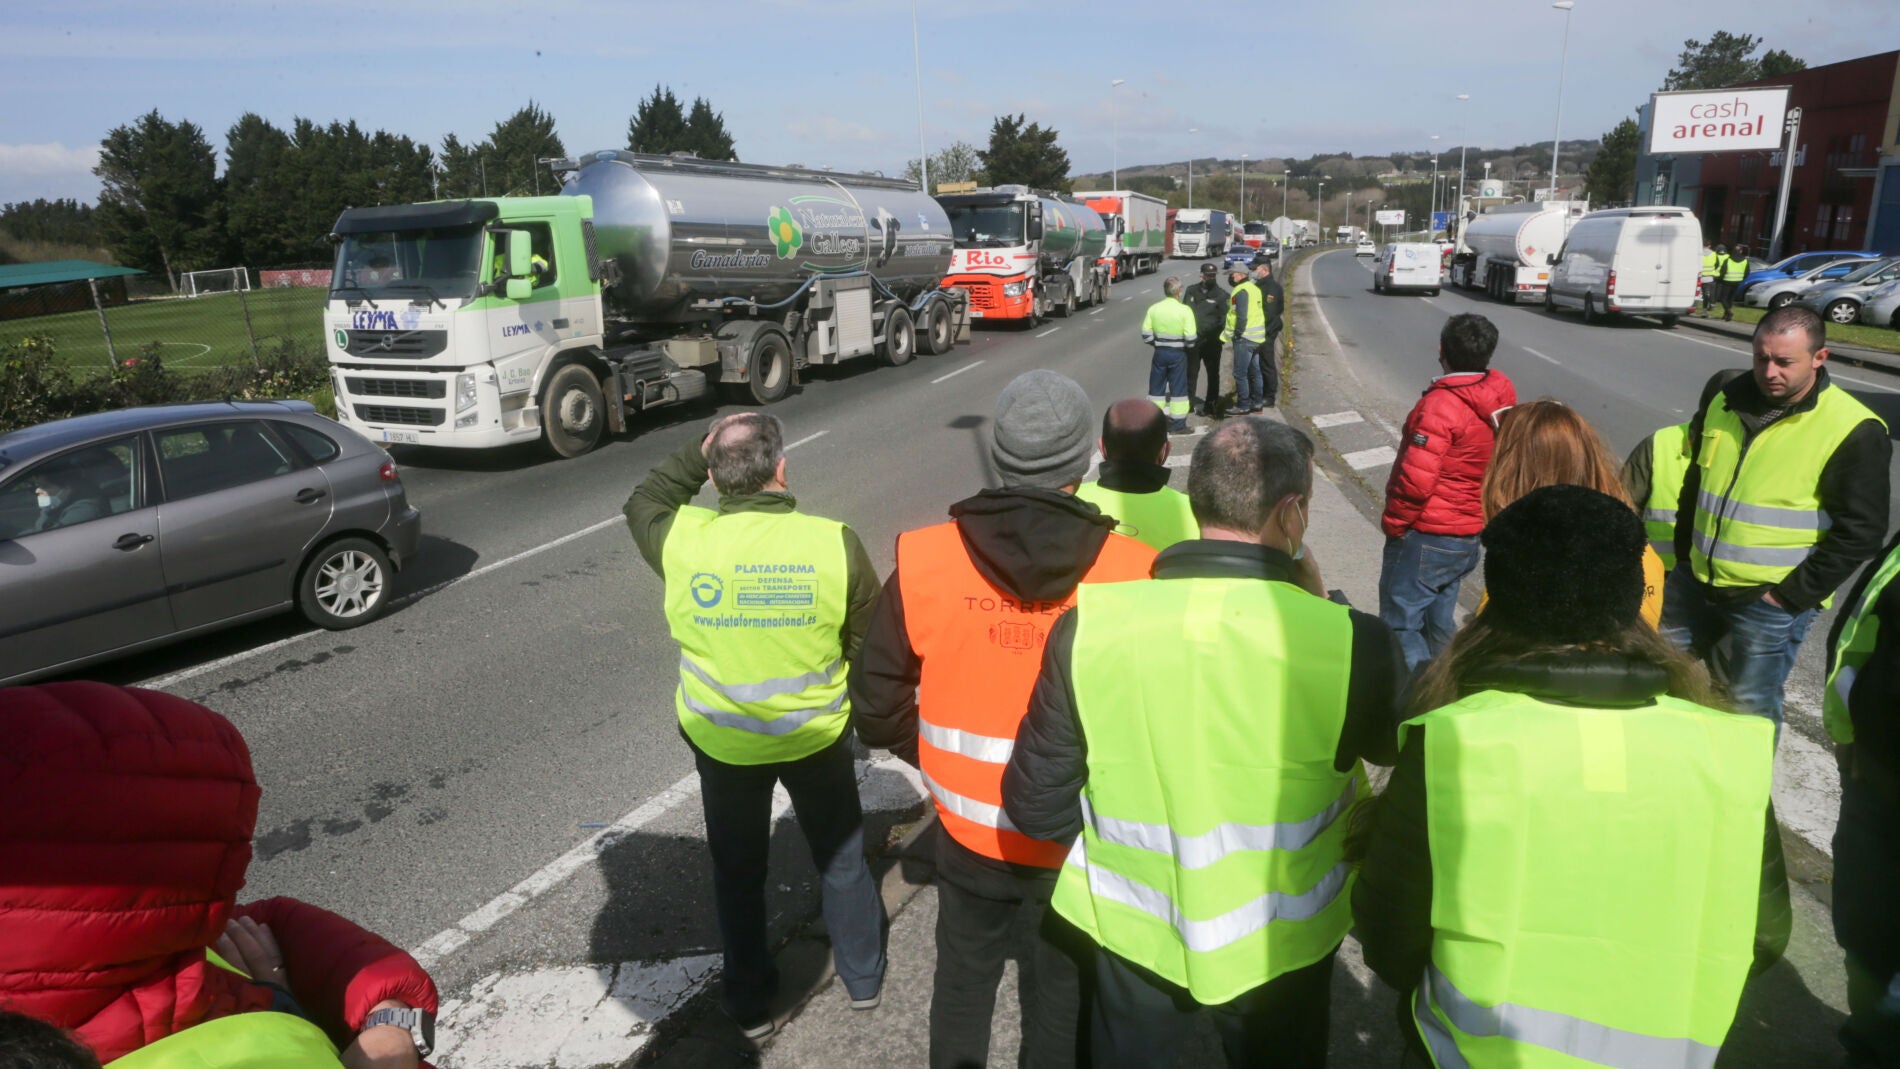 Huelga de transportistas: una plataforma convoca paros indefinidos desde el lunes 14